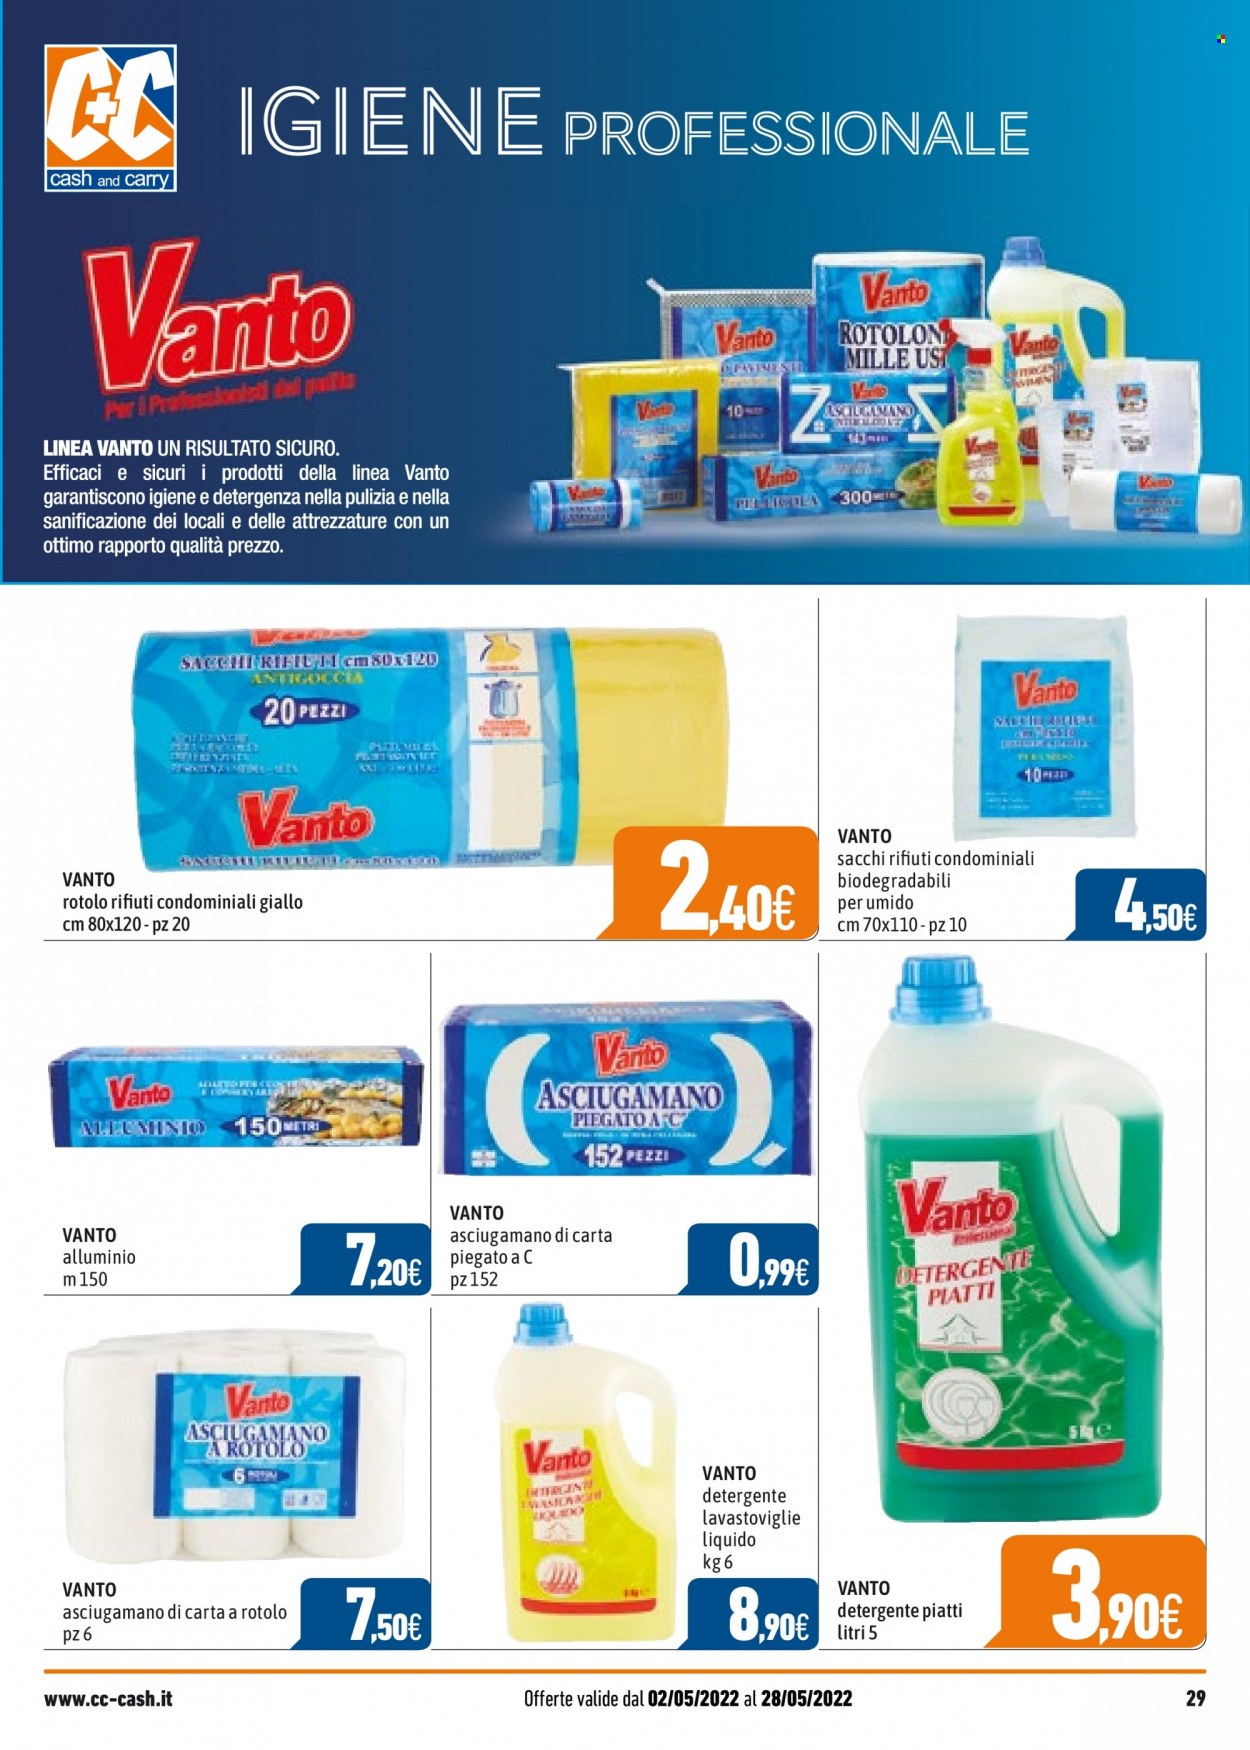 thumbnail - Volantino C+C Cash & Carry - 2/5/2022 - 28/5/2022 - Prodotti in offerta - detergente, detergente per piatti, asciugamano. Pagina 29.